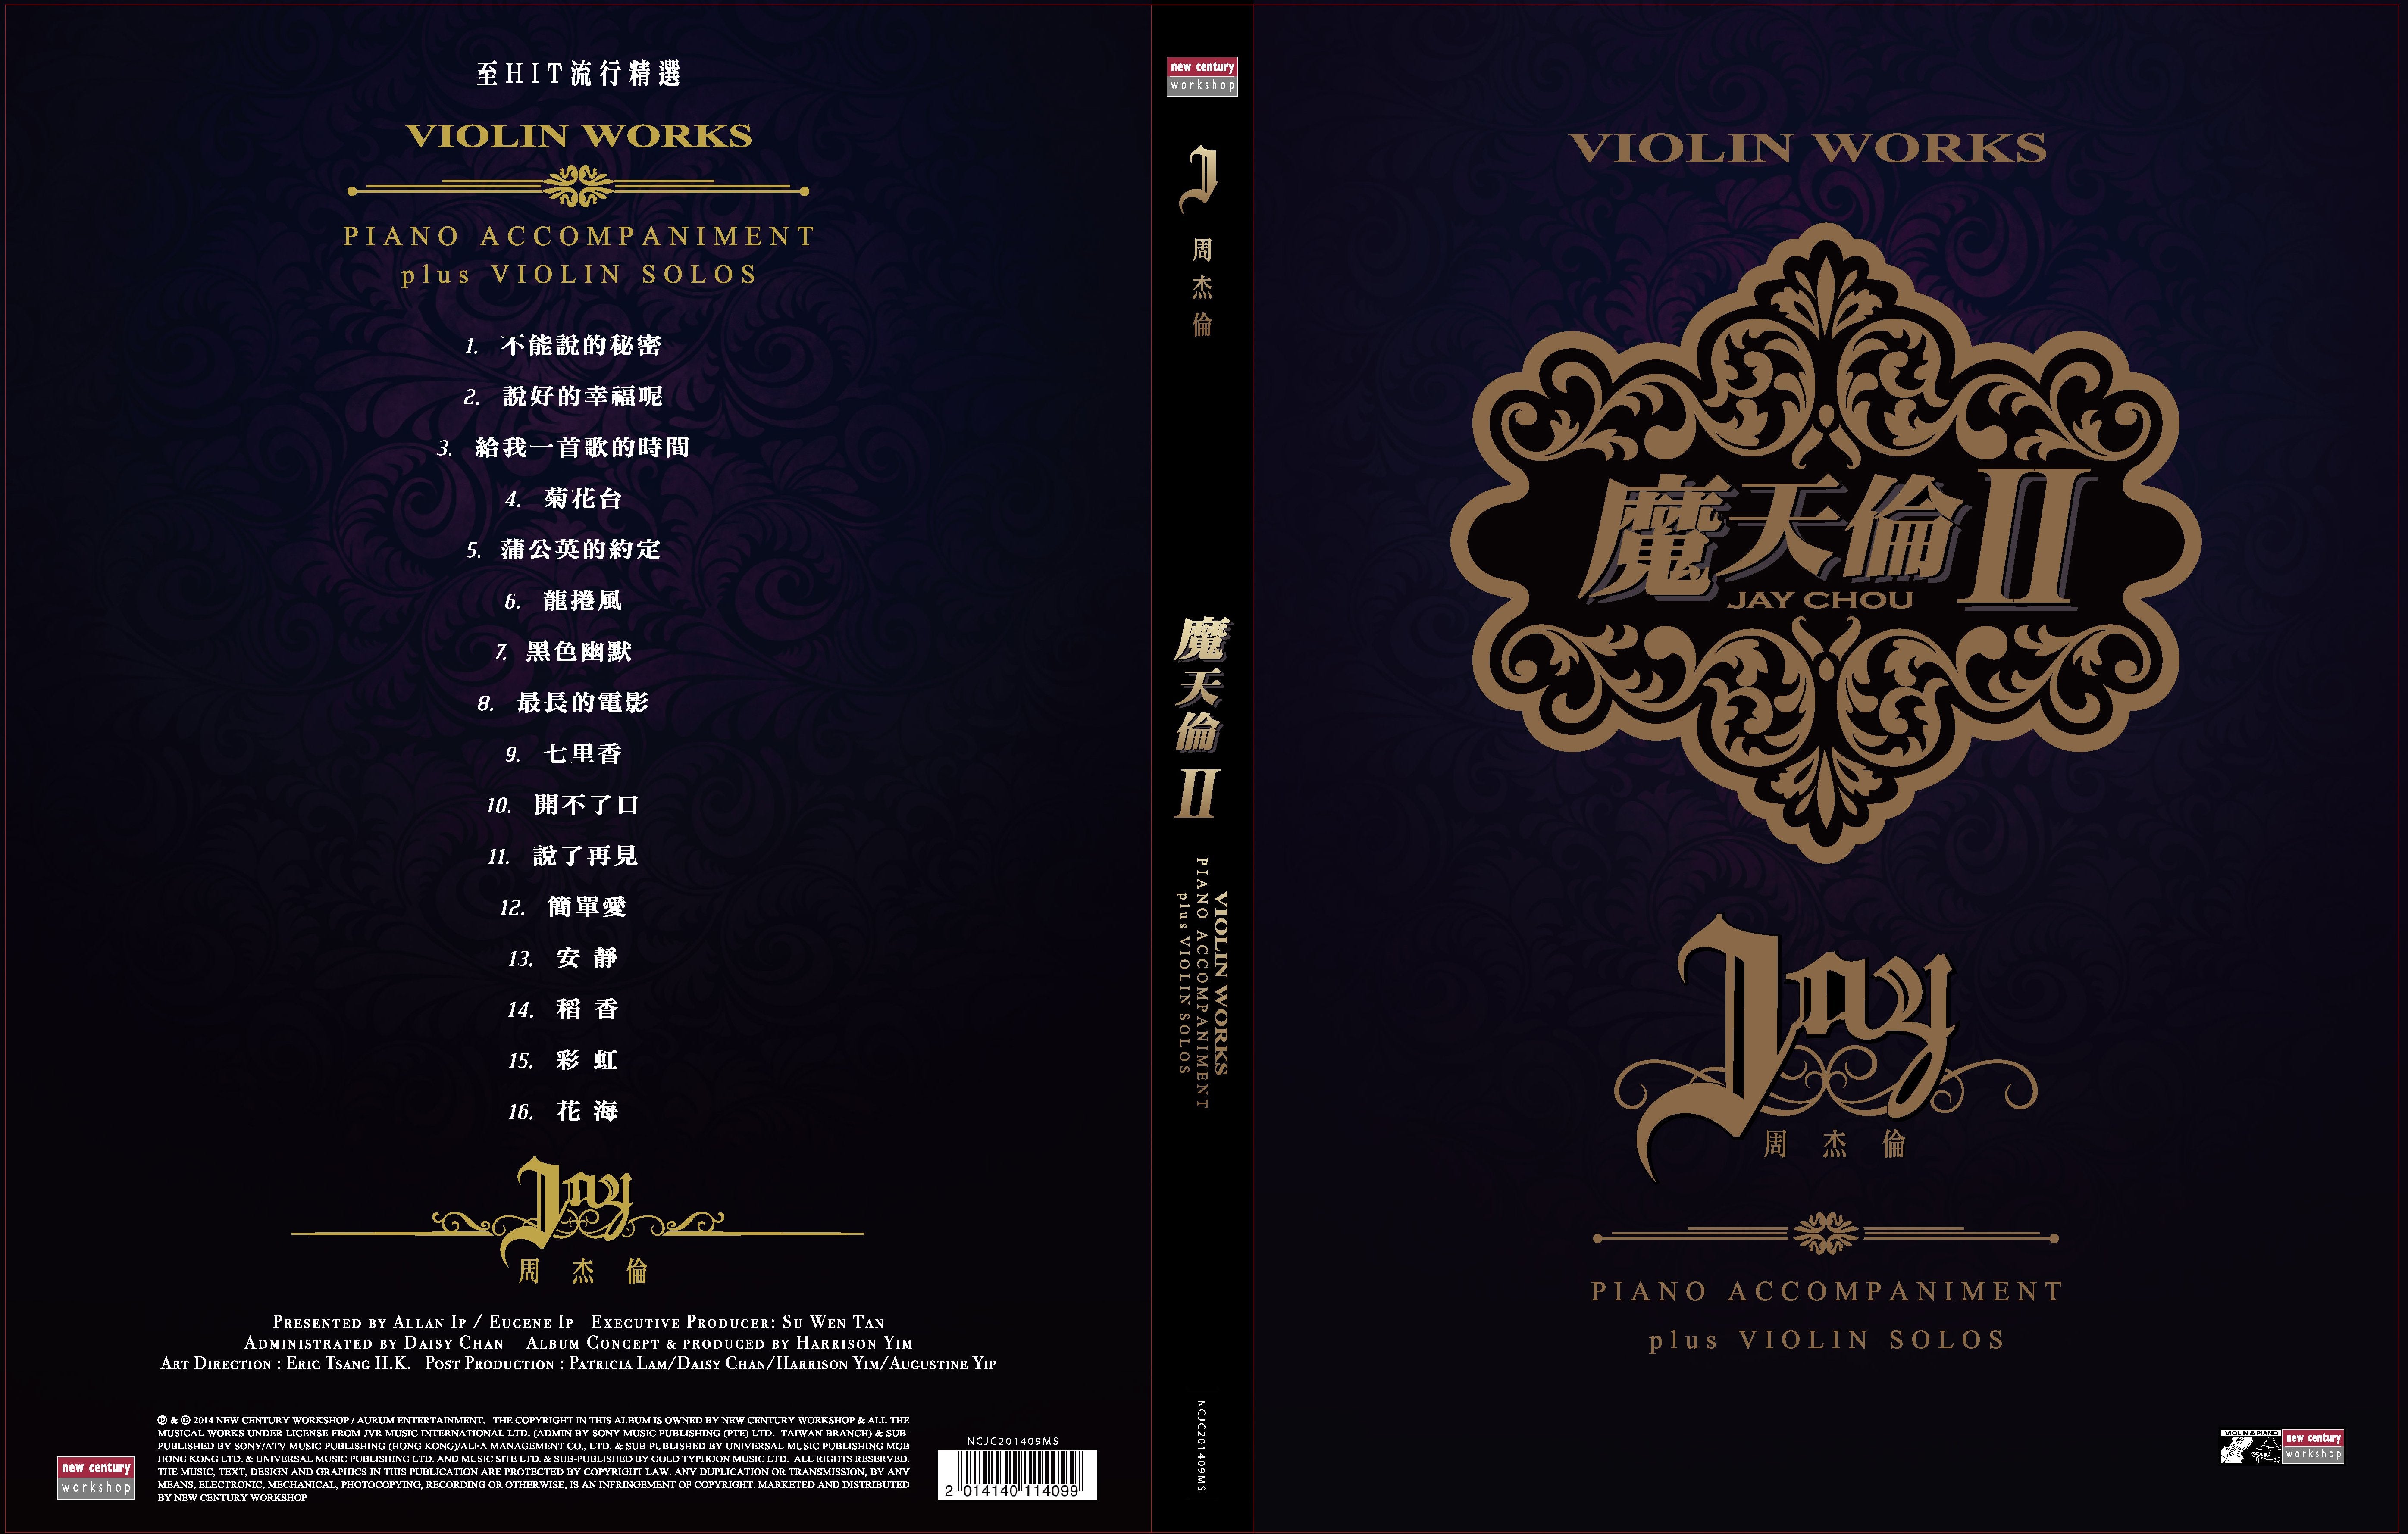 魔天倫II - 周杰倫 Jay Chou Violin Works